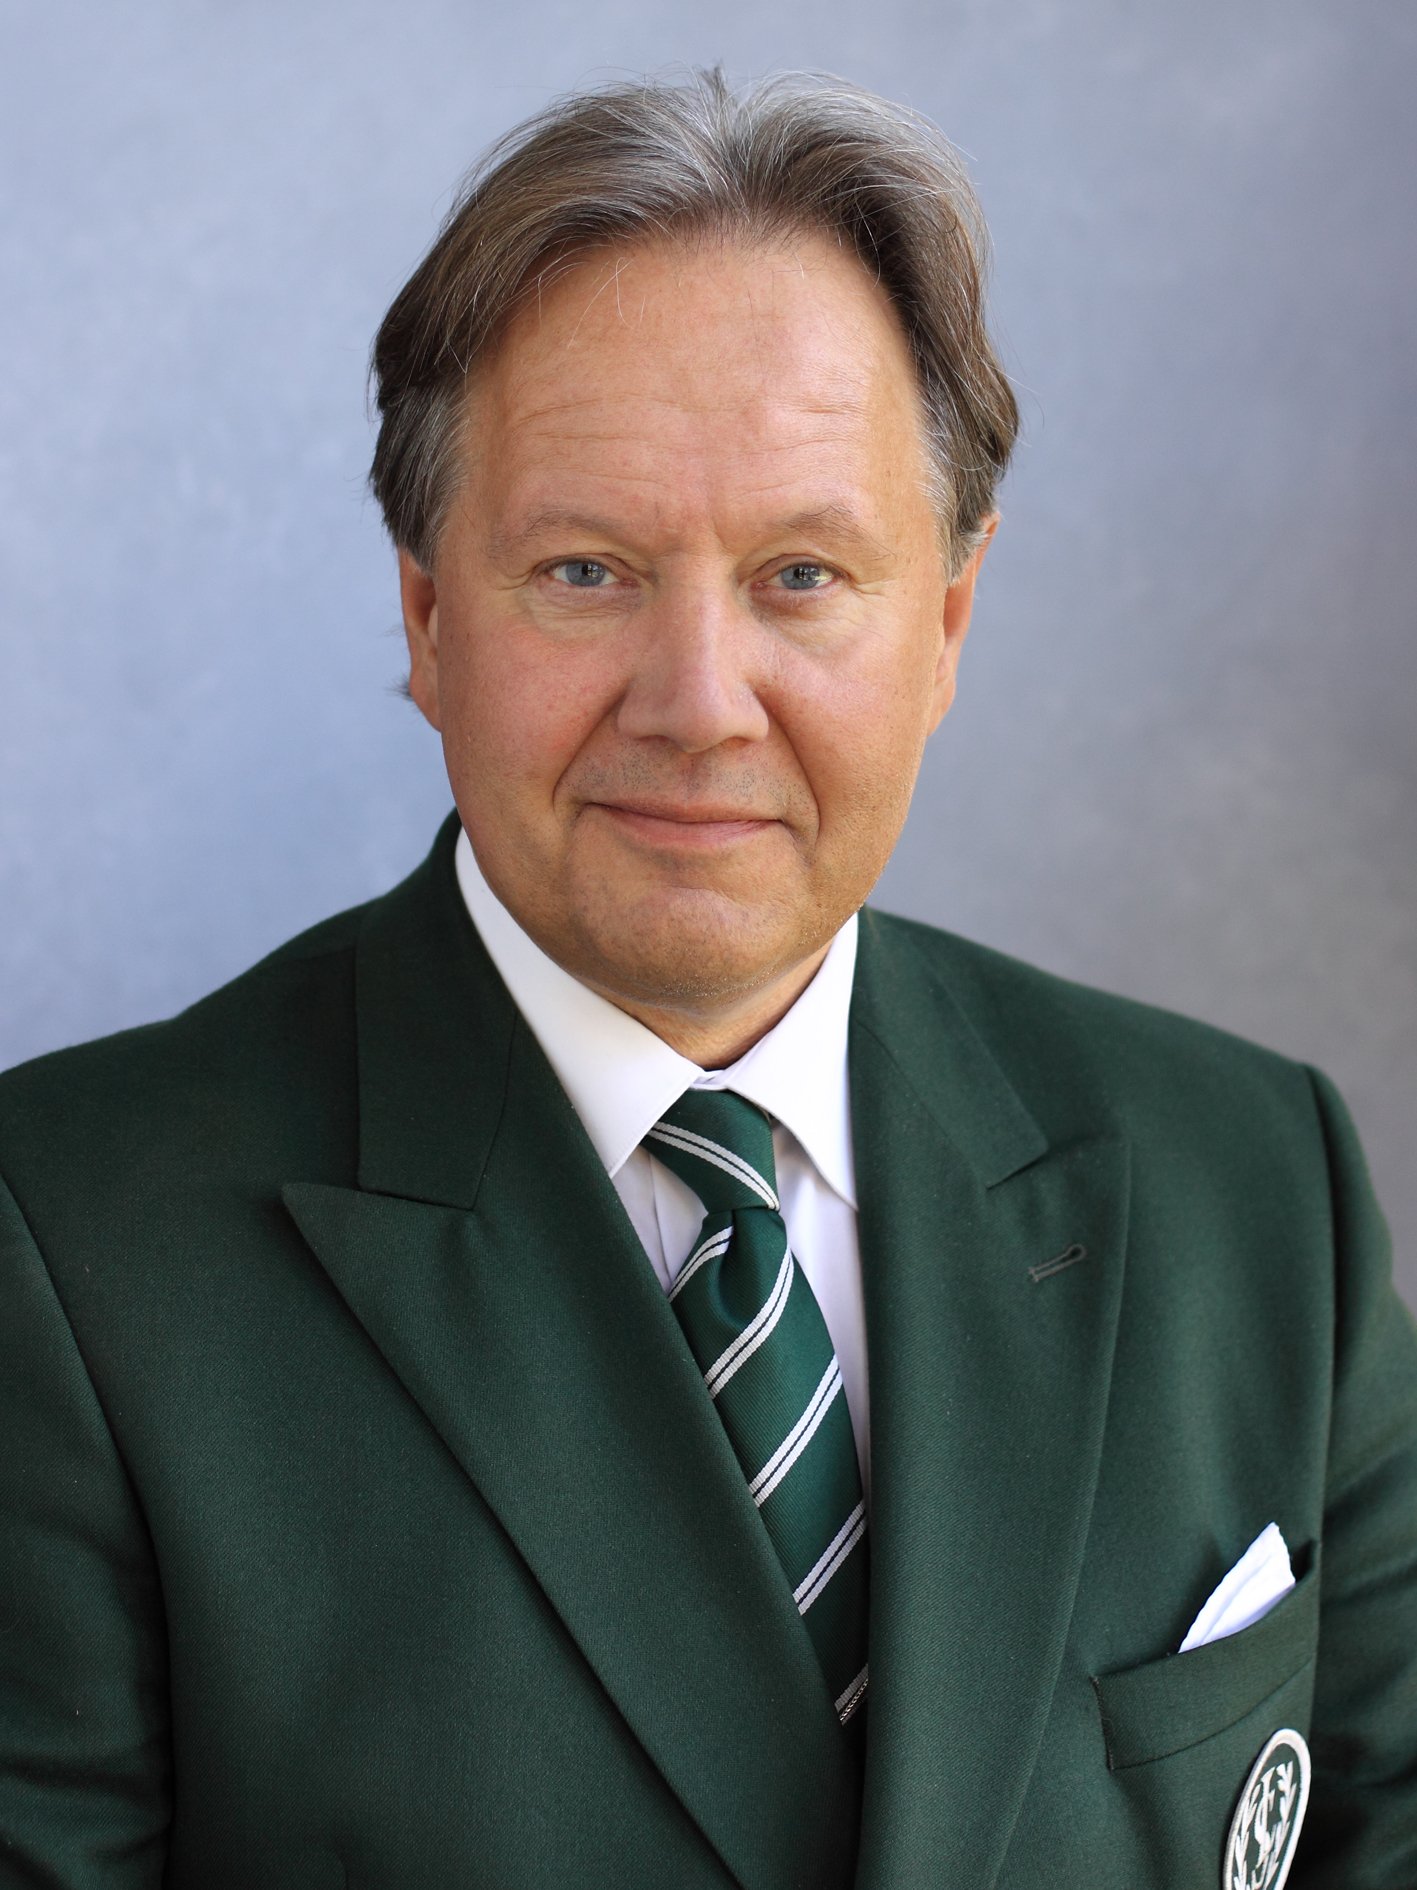 Rektorn tillika verksamhetschefen Staffan Hörnberg sparkades efter skandalen.